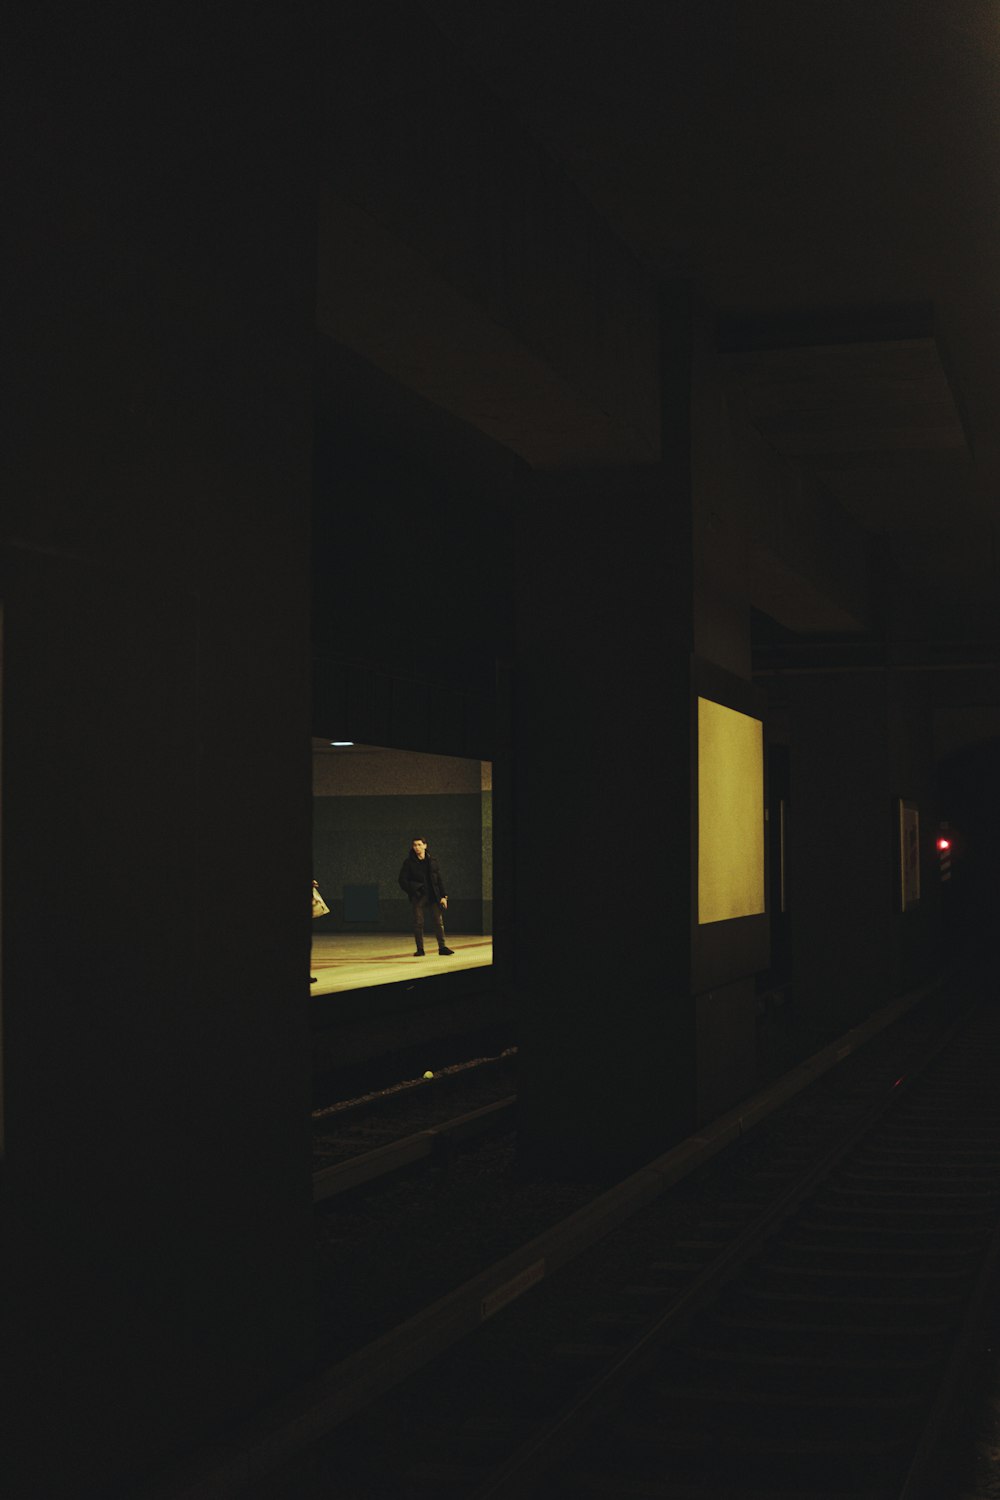 uma pessoa andando por um corredor escuro à noite